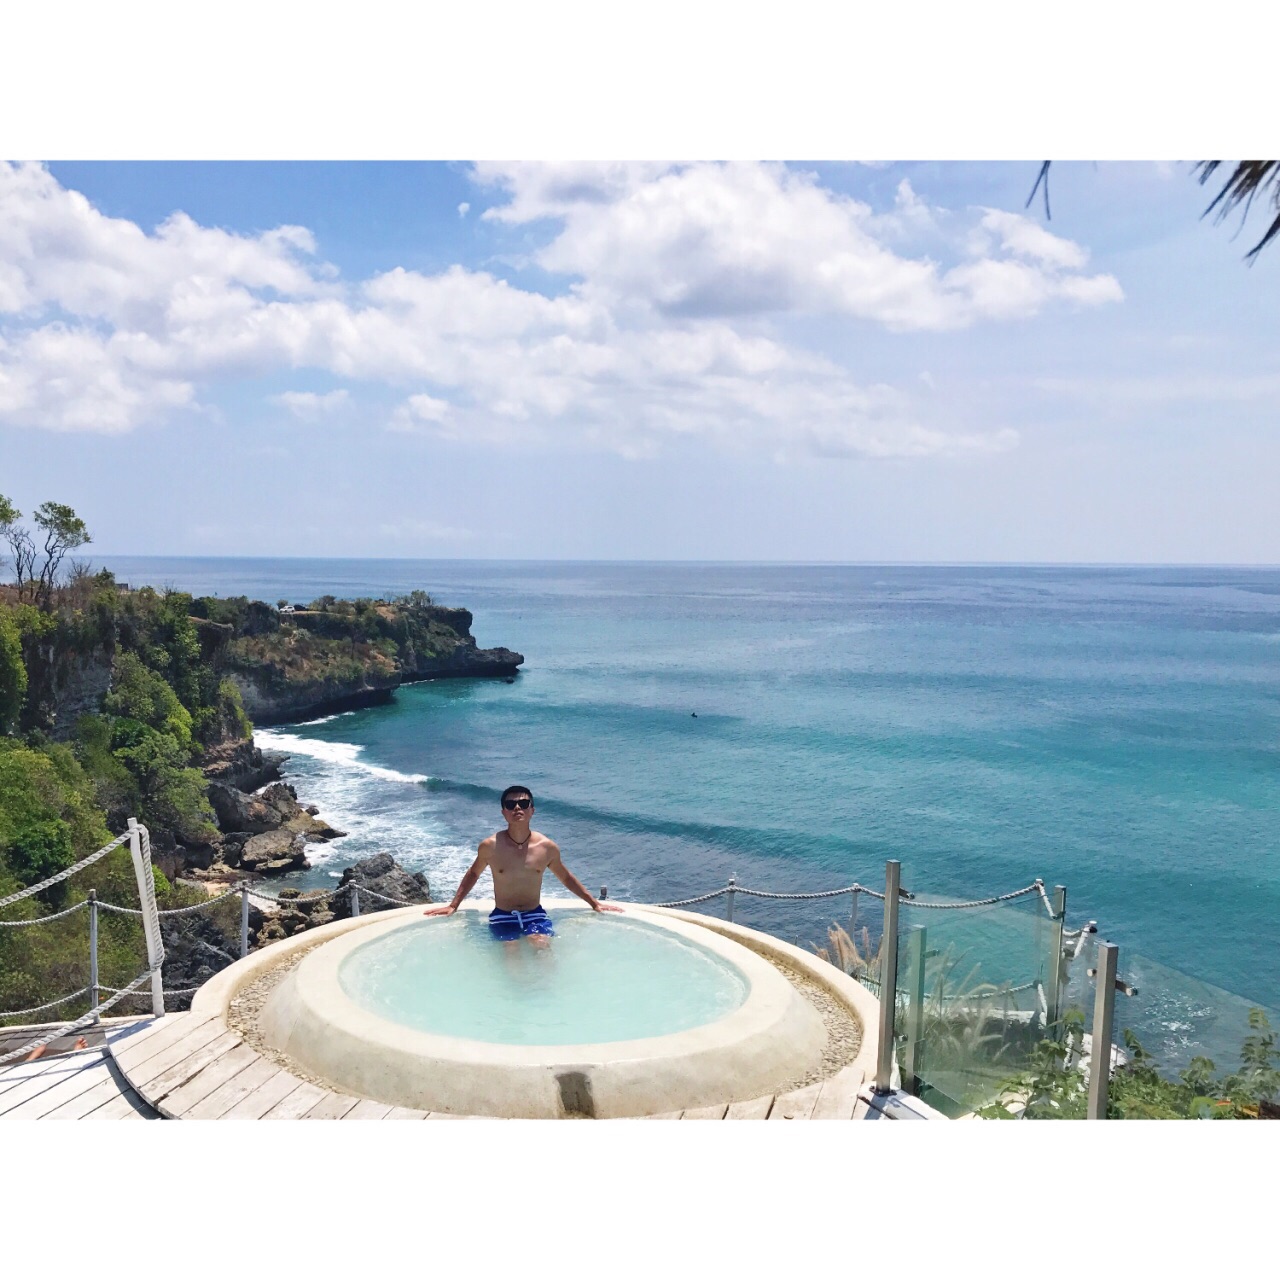 邀约w：sunningqt 在悬崖浴缸里泡个澡挺舒服吧😄 巴厘岛悬崖海景酒店+spa。